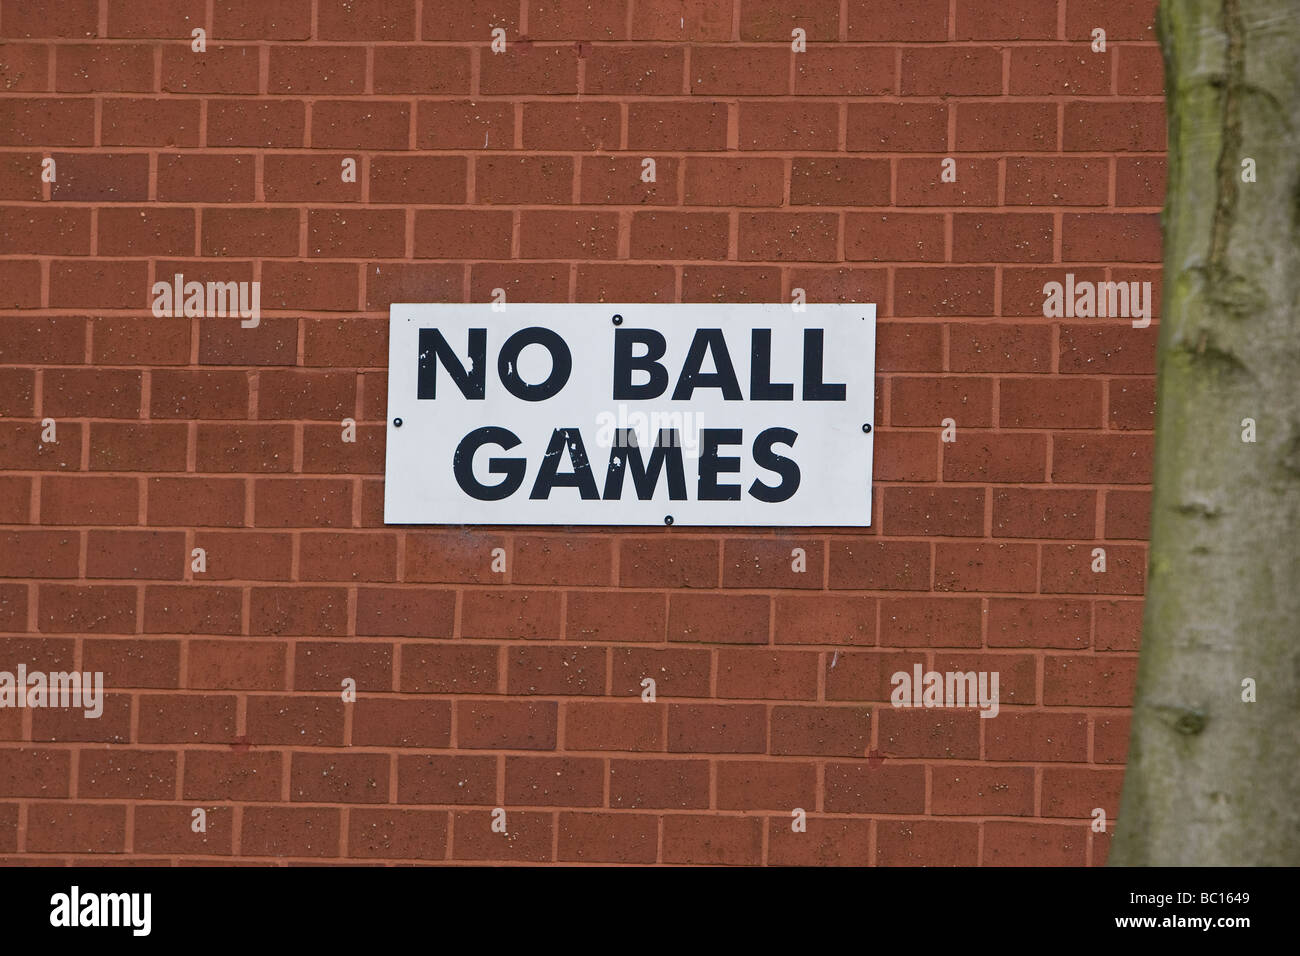 No ball games warning sign Stock Photo